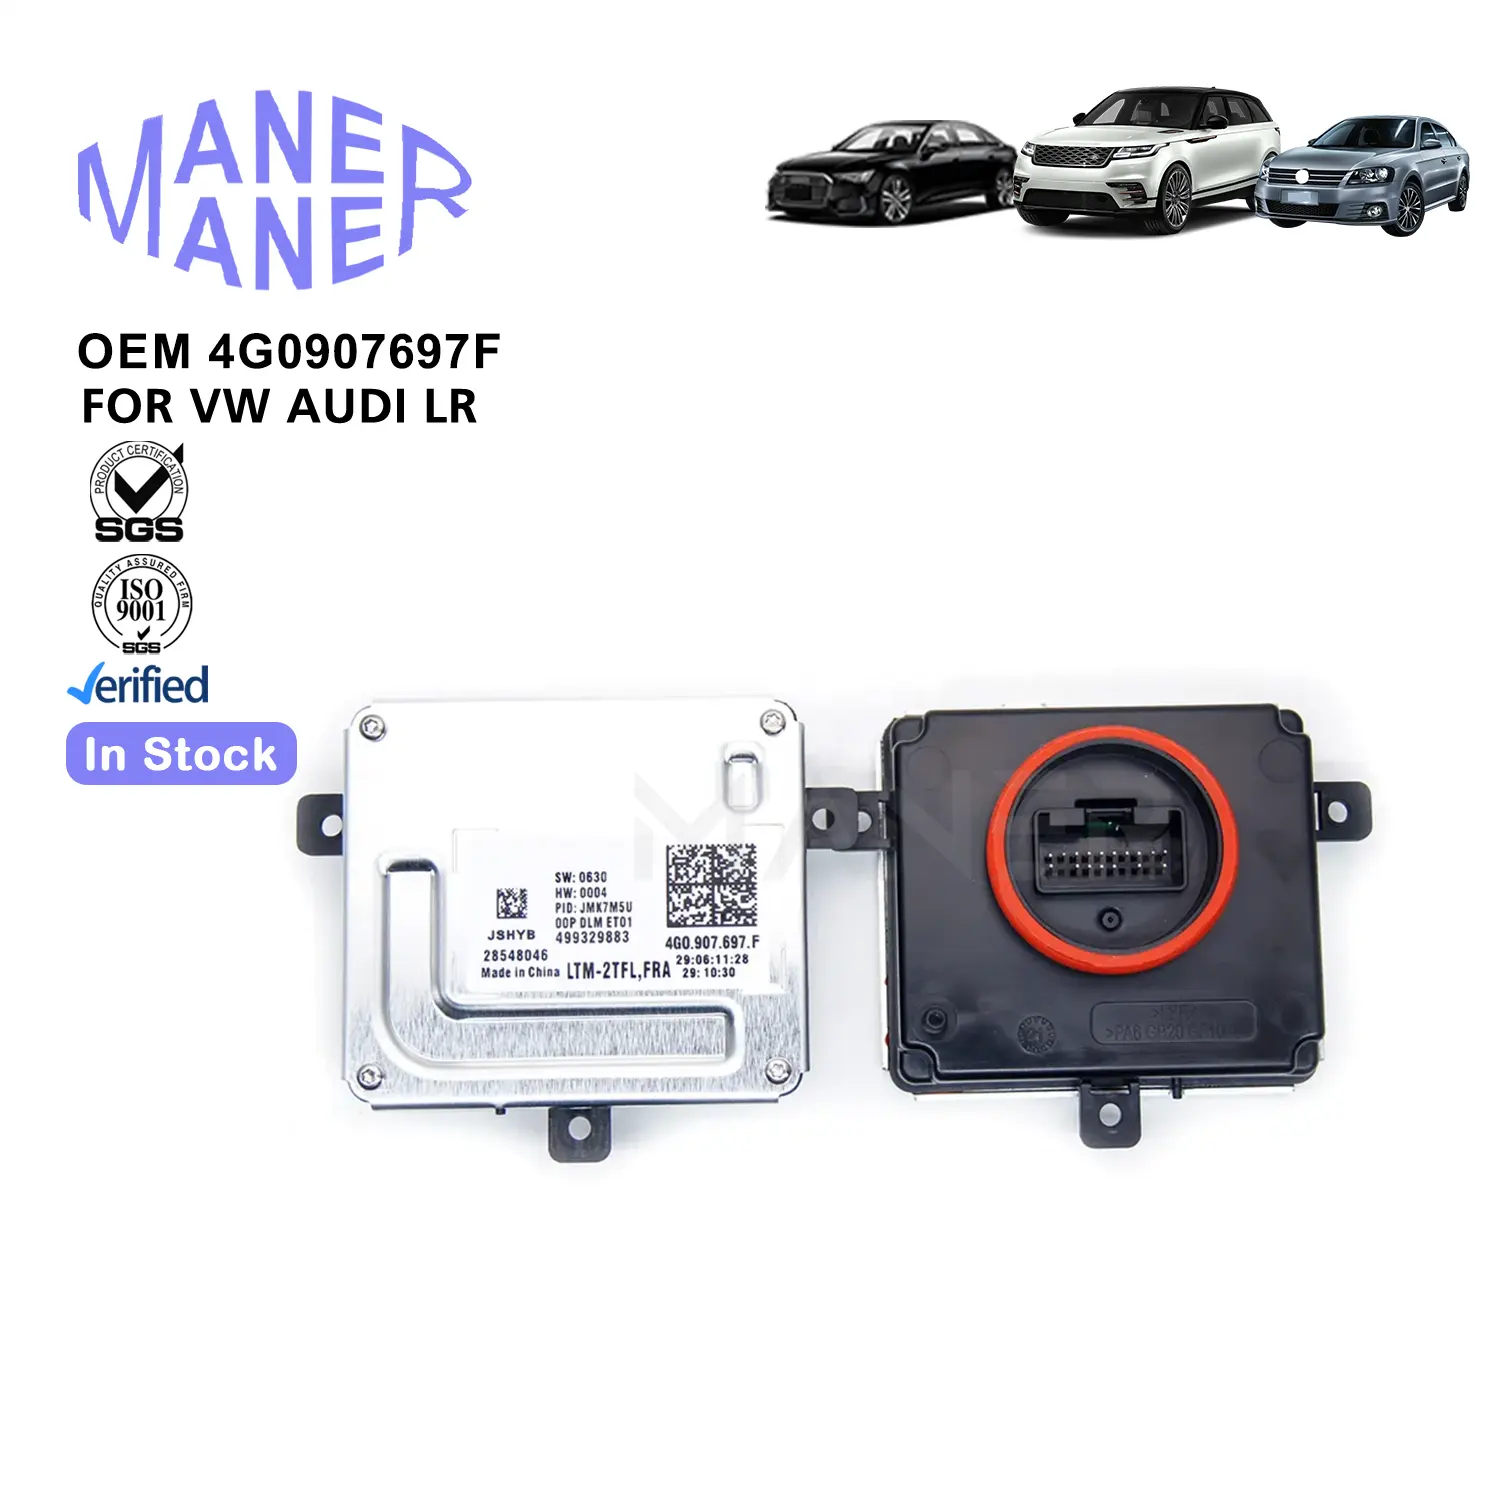 MANER araç aydınlatma sistemi, 4G0907697F üretici işık kontrol modülü Audi A7 A6 A8 VW Golf Passat için